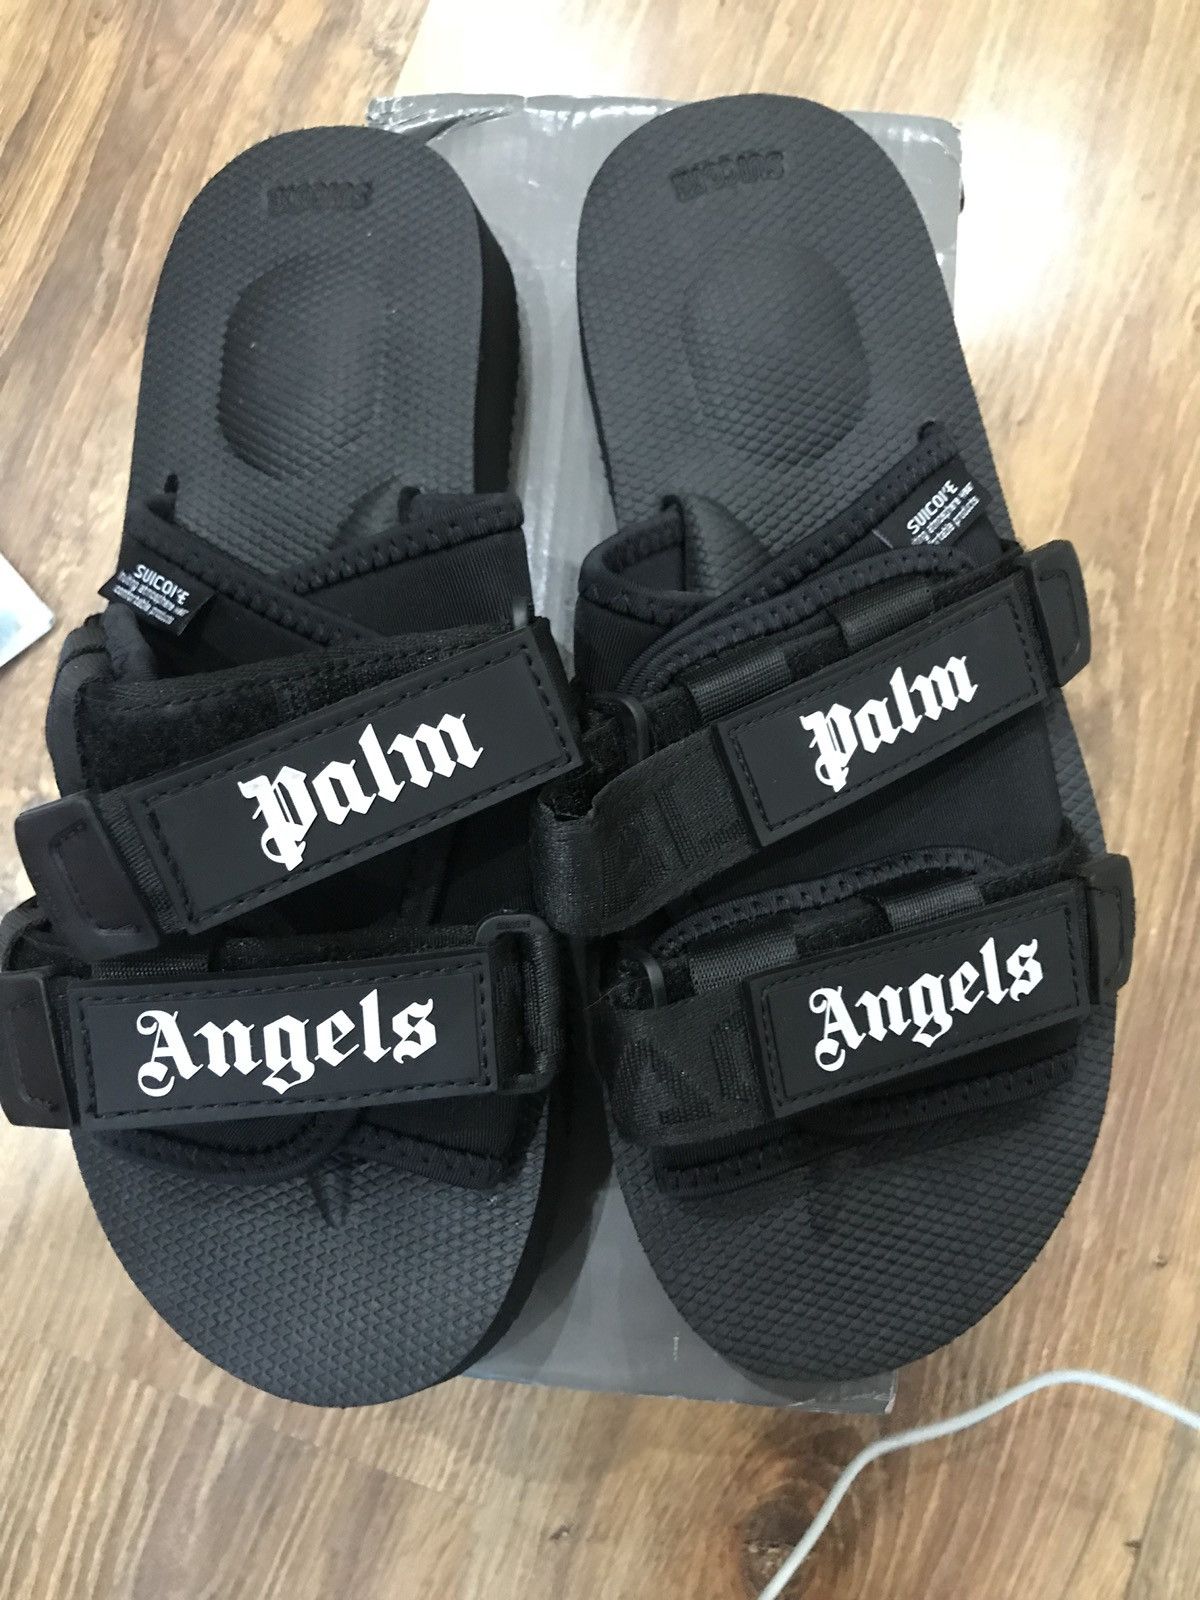 suicoke x palm angels sandals｜TikTok Search